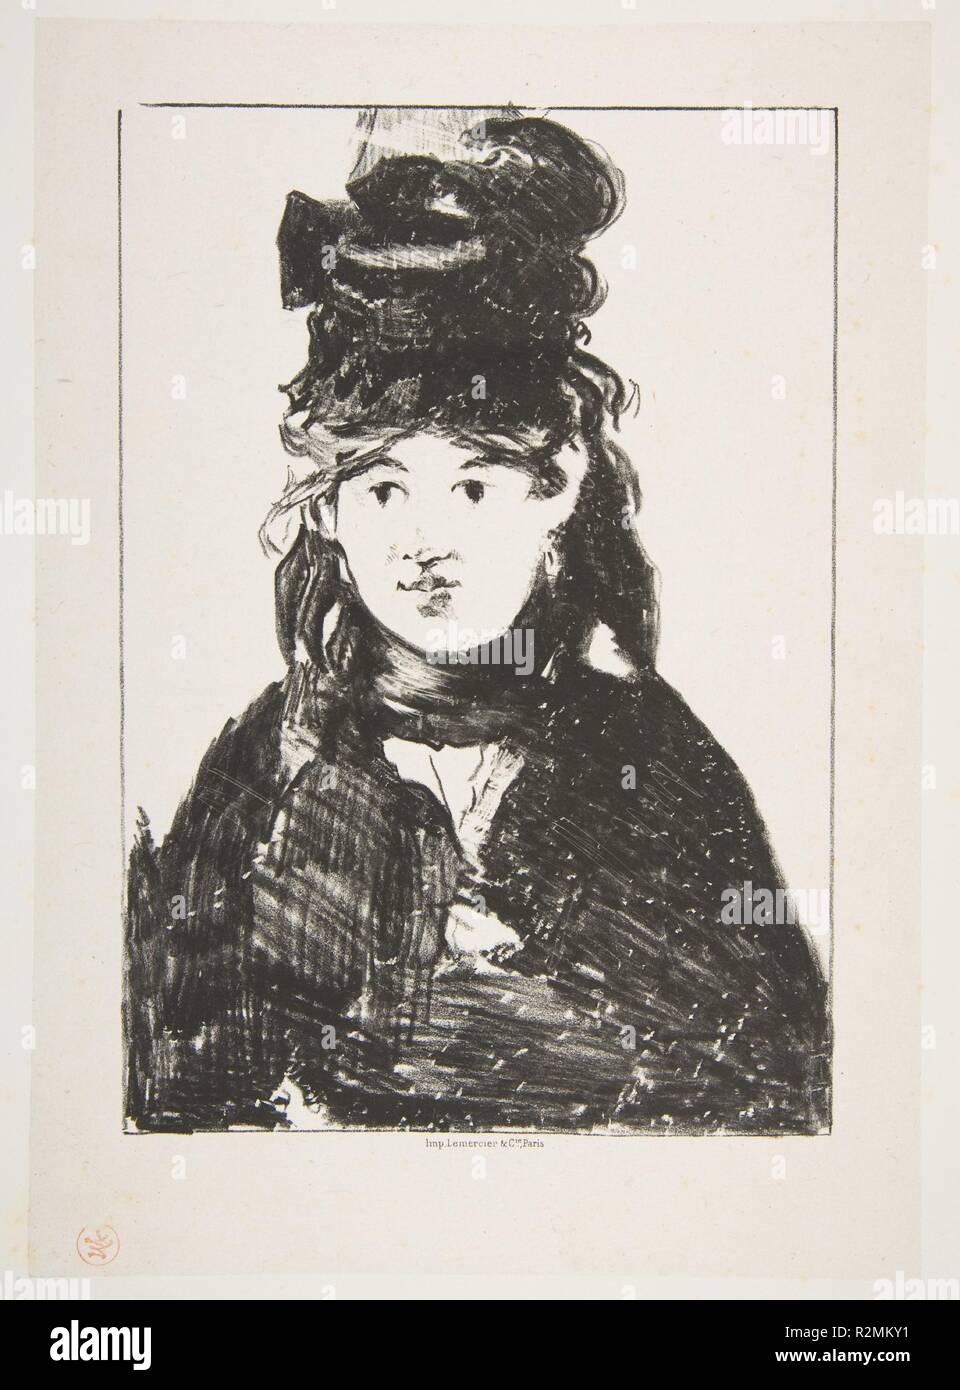 Berthe Morisot (en noir). Artiste : Édouard Manet (français, Paris 1832-1883 Paris). Image : 9 Dimensions : 13/16 x 6 15/16 in. (24,9 x 17,6 cm) feuille : 15 3/4 x 11 7/8in. (40 x 30.2cm). Imprimante : Lemercier & Cie (français, Paris). Sitter : Portrait de Berthe Morisot (Français, Bourges 1841-1895 Paris). Date : 1872-74. Musée : Metropolitan Museum of Art, New York, USA. Banque D'Images